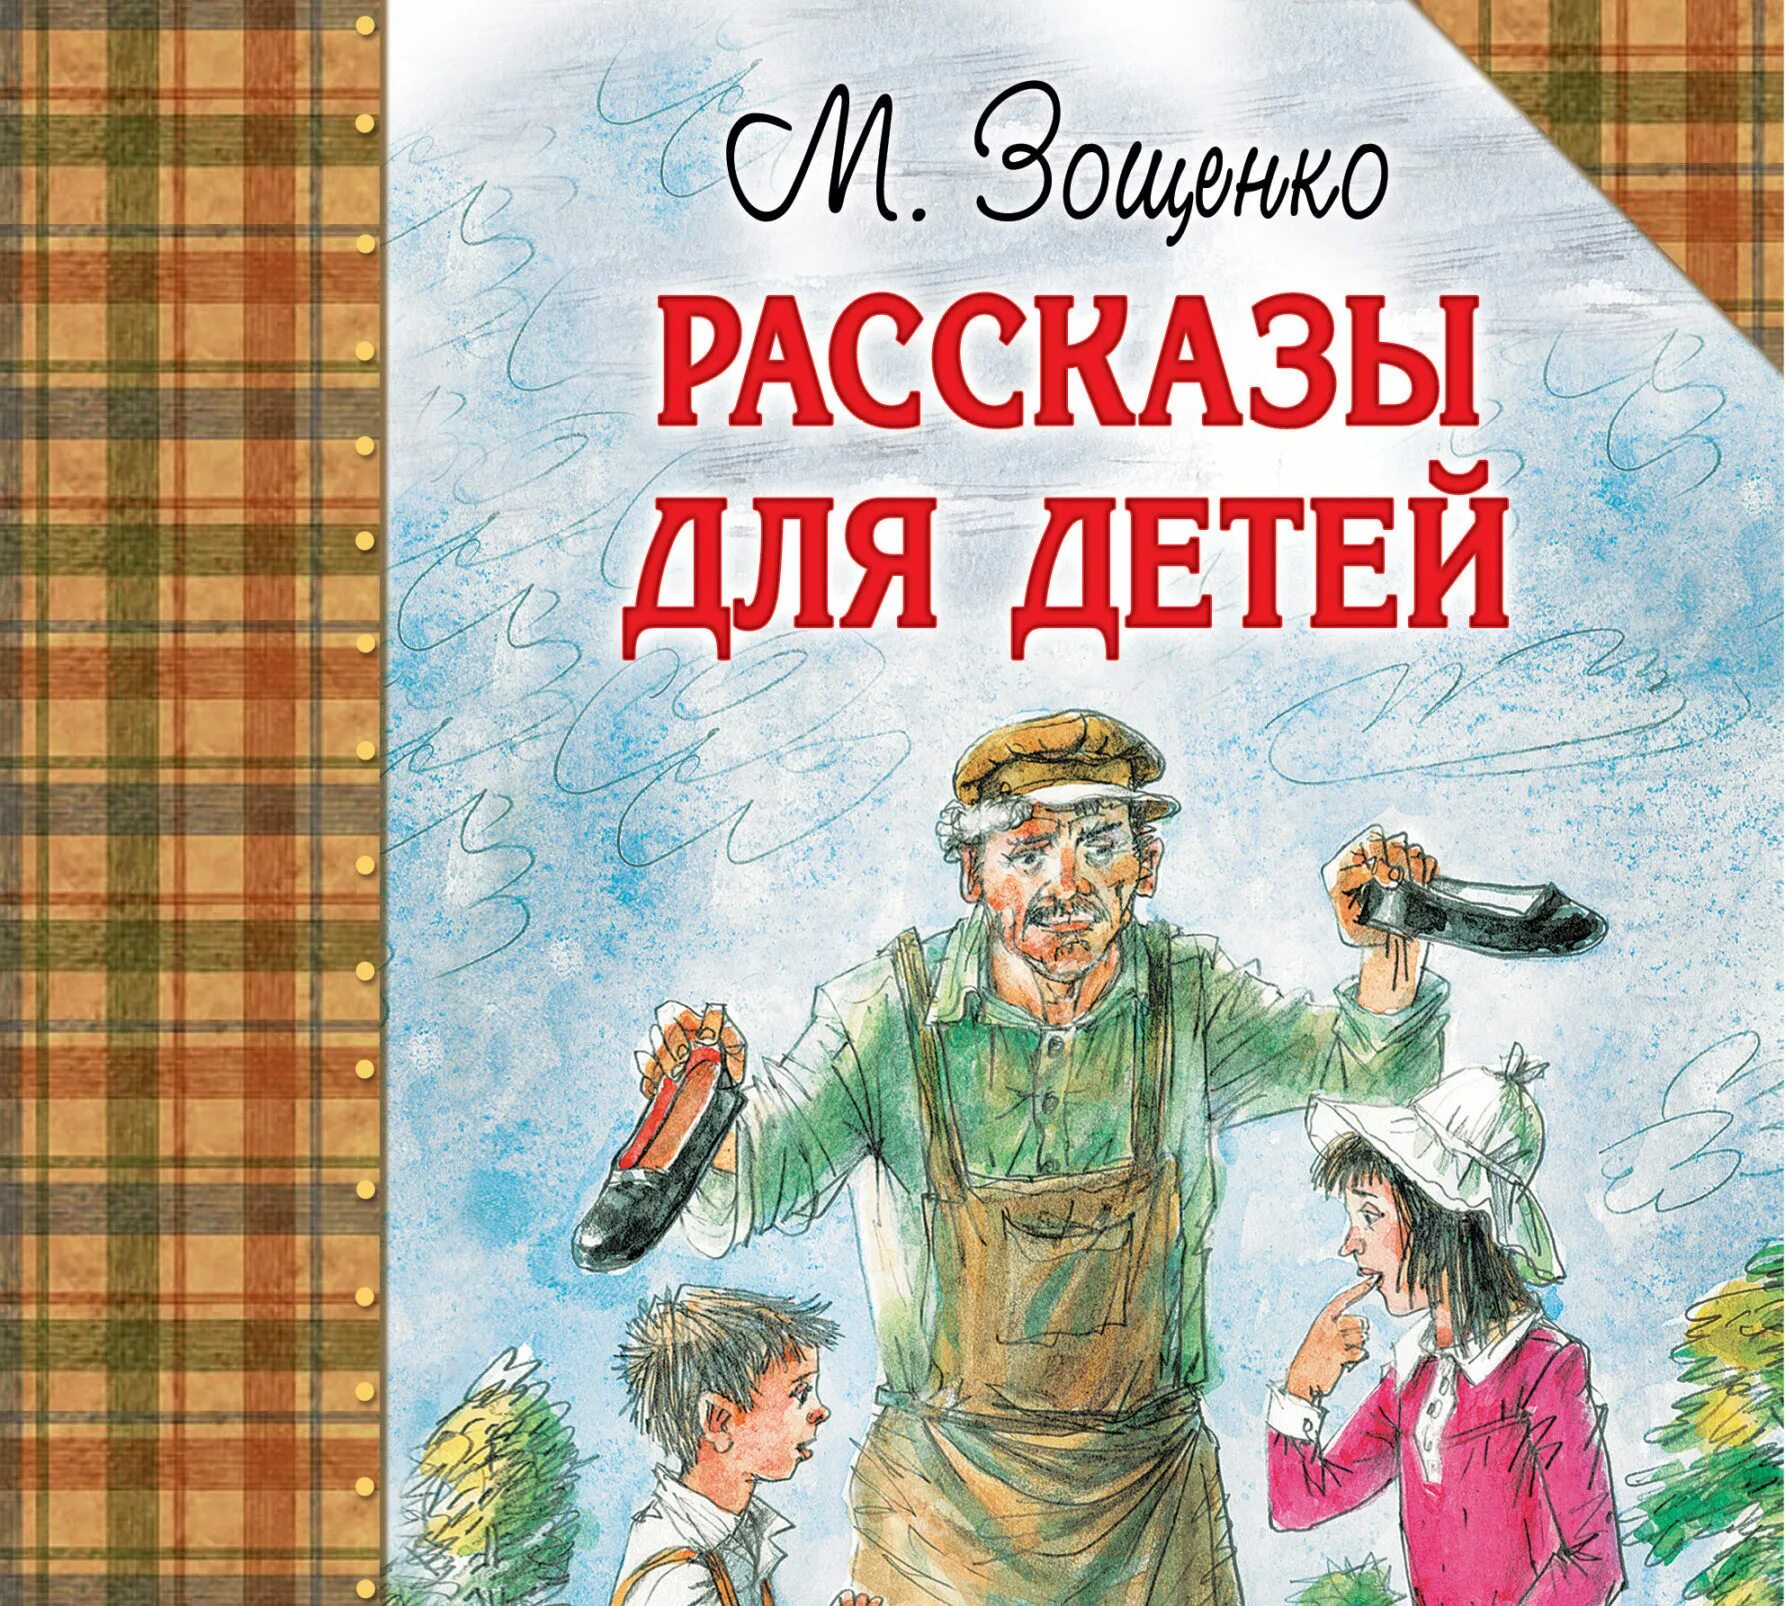 Какие смешные произведения написал зощенко. Зощенко м. рассказы для детей.